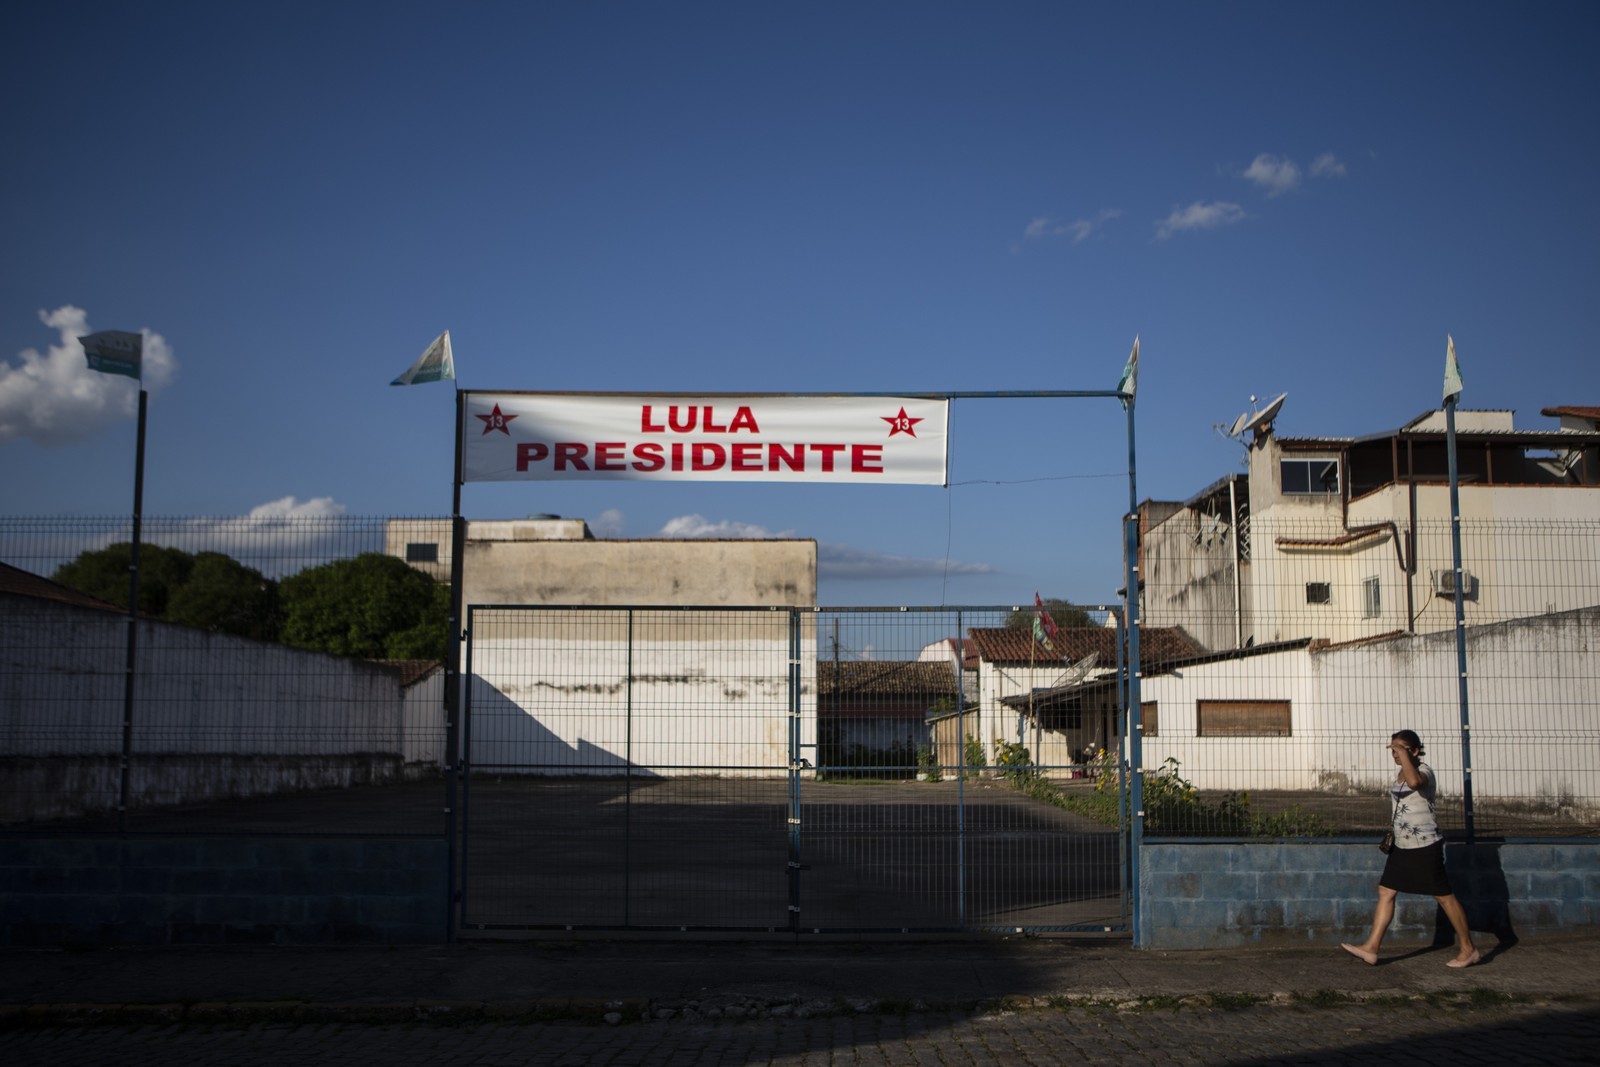 No município do Sul Fluminense, Lula saiu vencedor no primeiro turno por cerca de 200 votos — Foto: Alexandre Cassiano/Agência O Globo